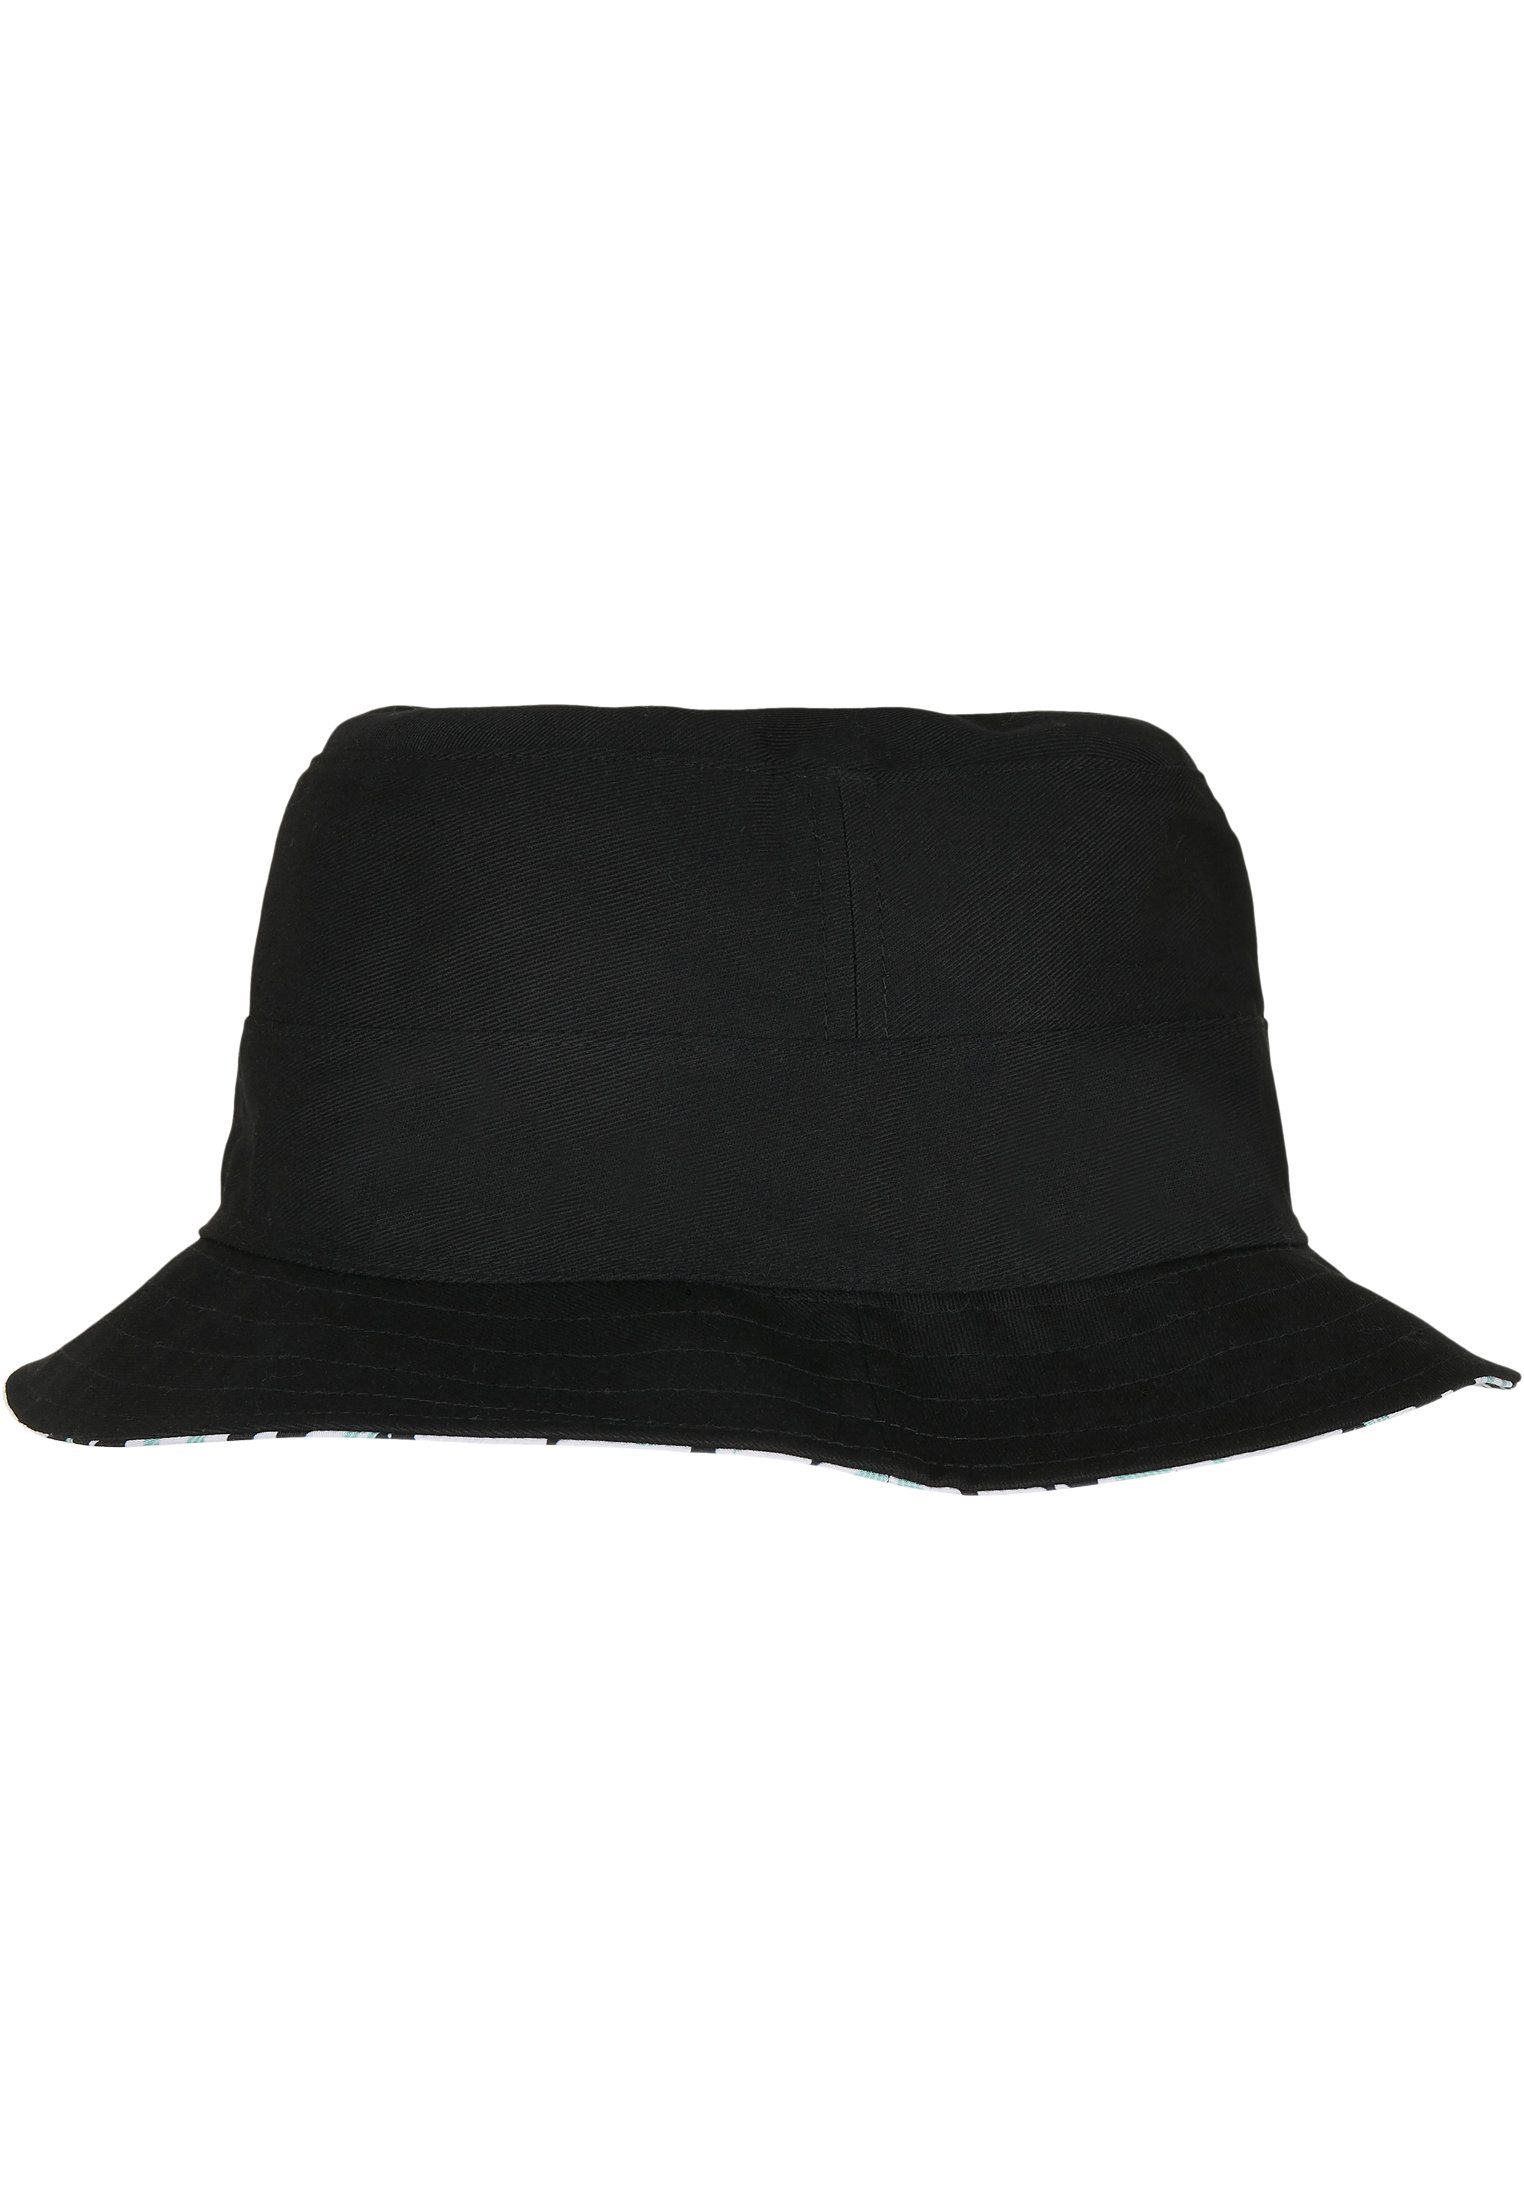 CAYLER & Bucket SONS Reversible Aztec Flex Summer WL Cap C&S Hat